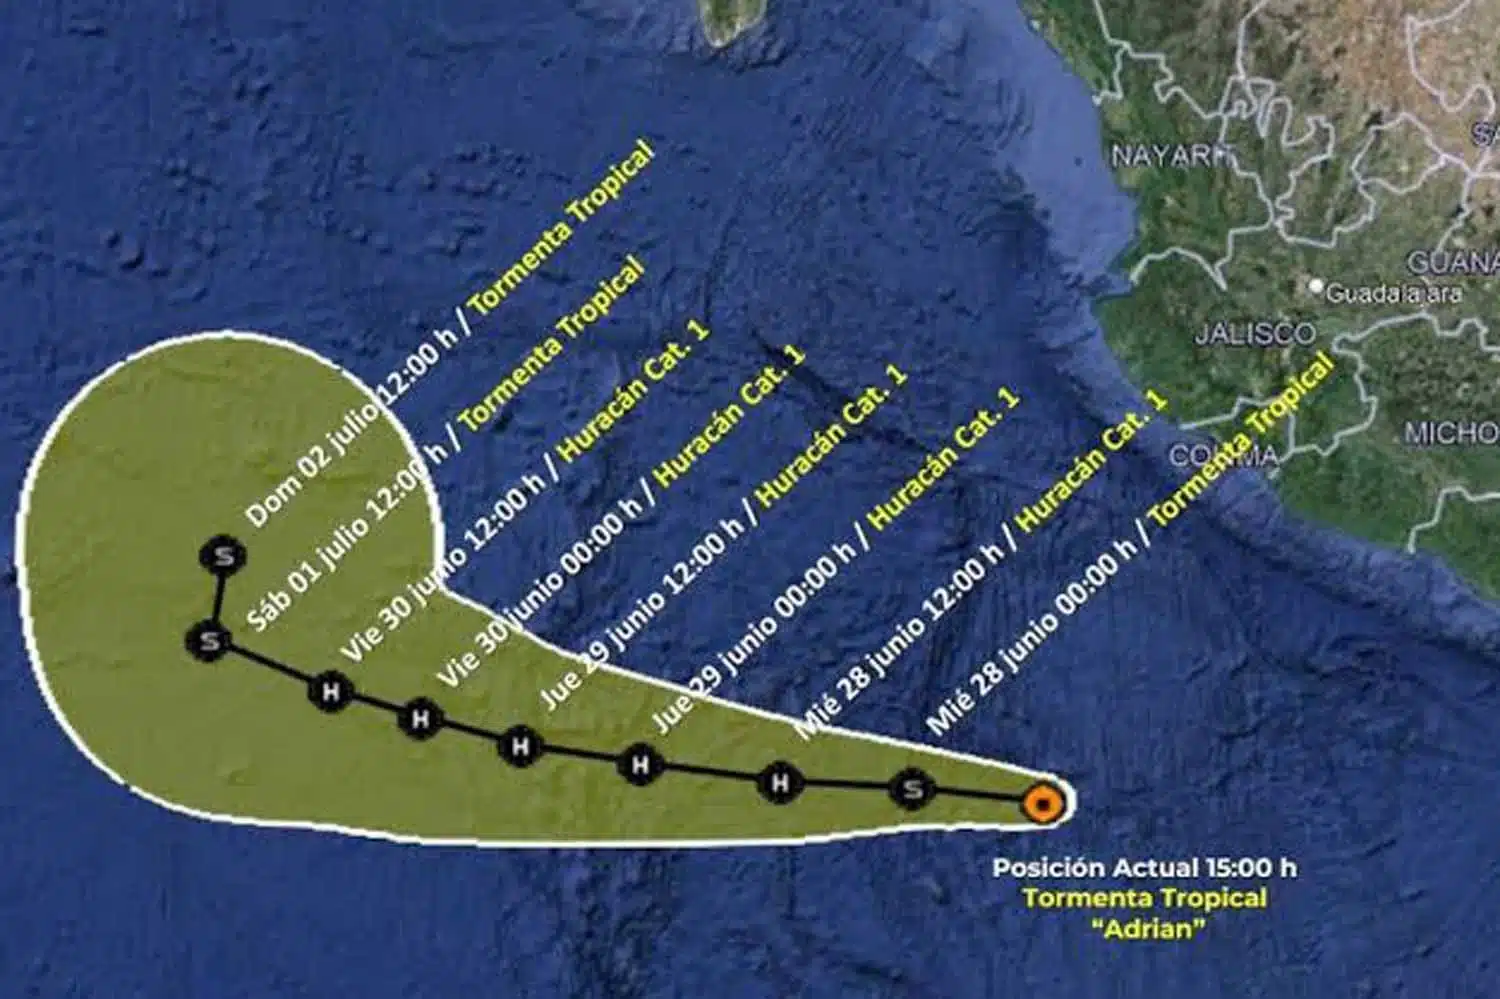 Adrian evolucionó a huracán categoría 1 de acuerdo con la escala de vientos de huracanes